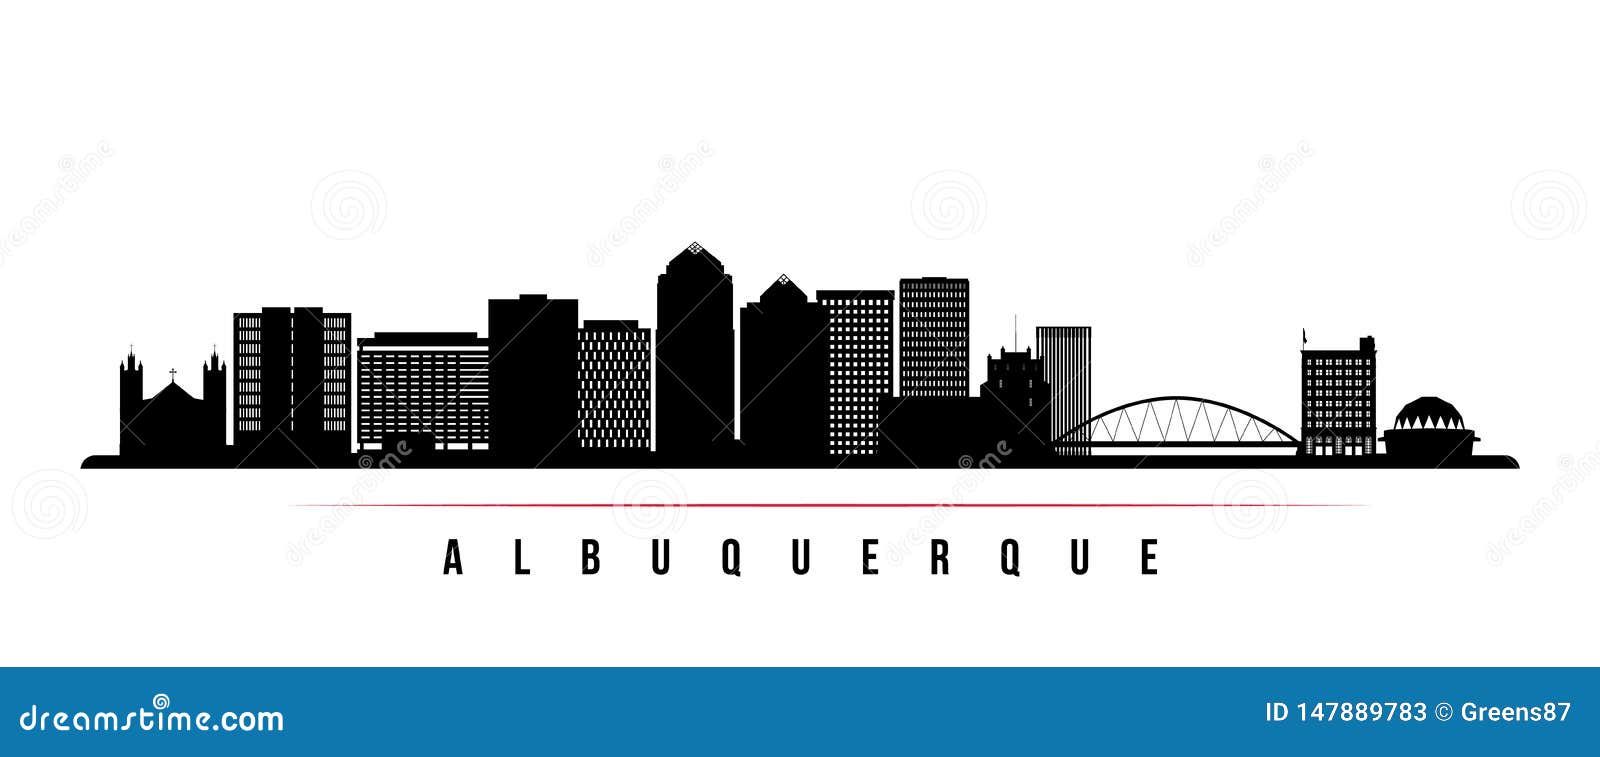 albuquerque city skyline horizontal banner.